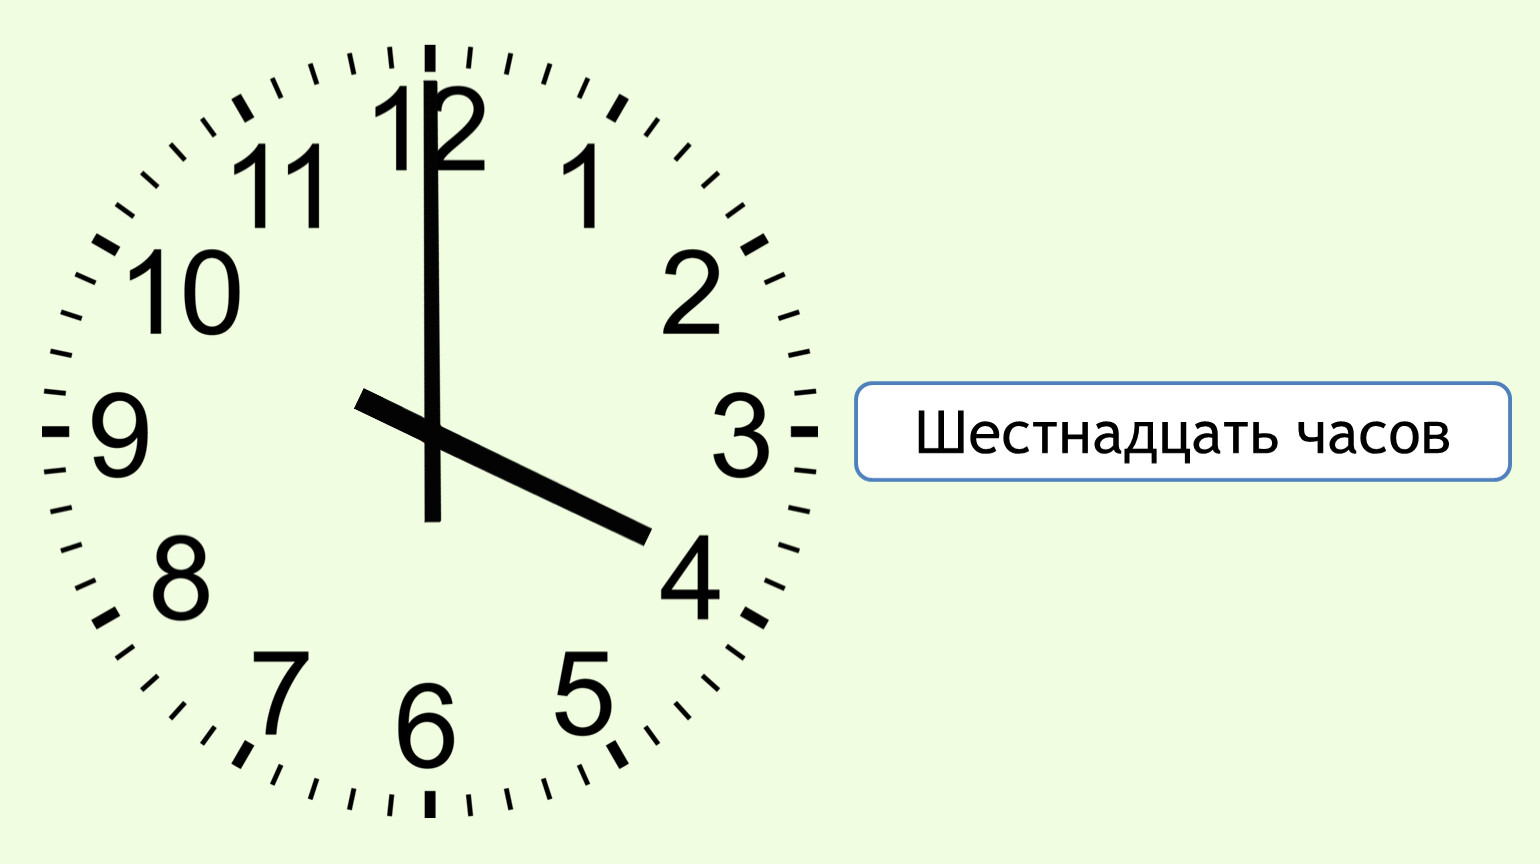 Четвертый час. Часы 16:00. Циферблат на 16 часов. Часы показывают 4 часа. 16 Часов на часах.